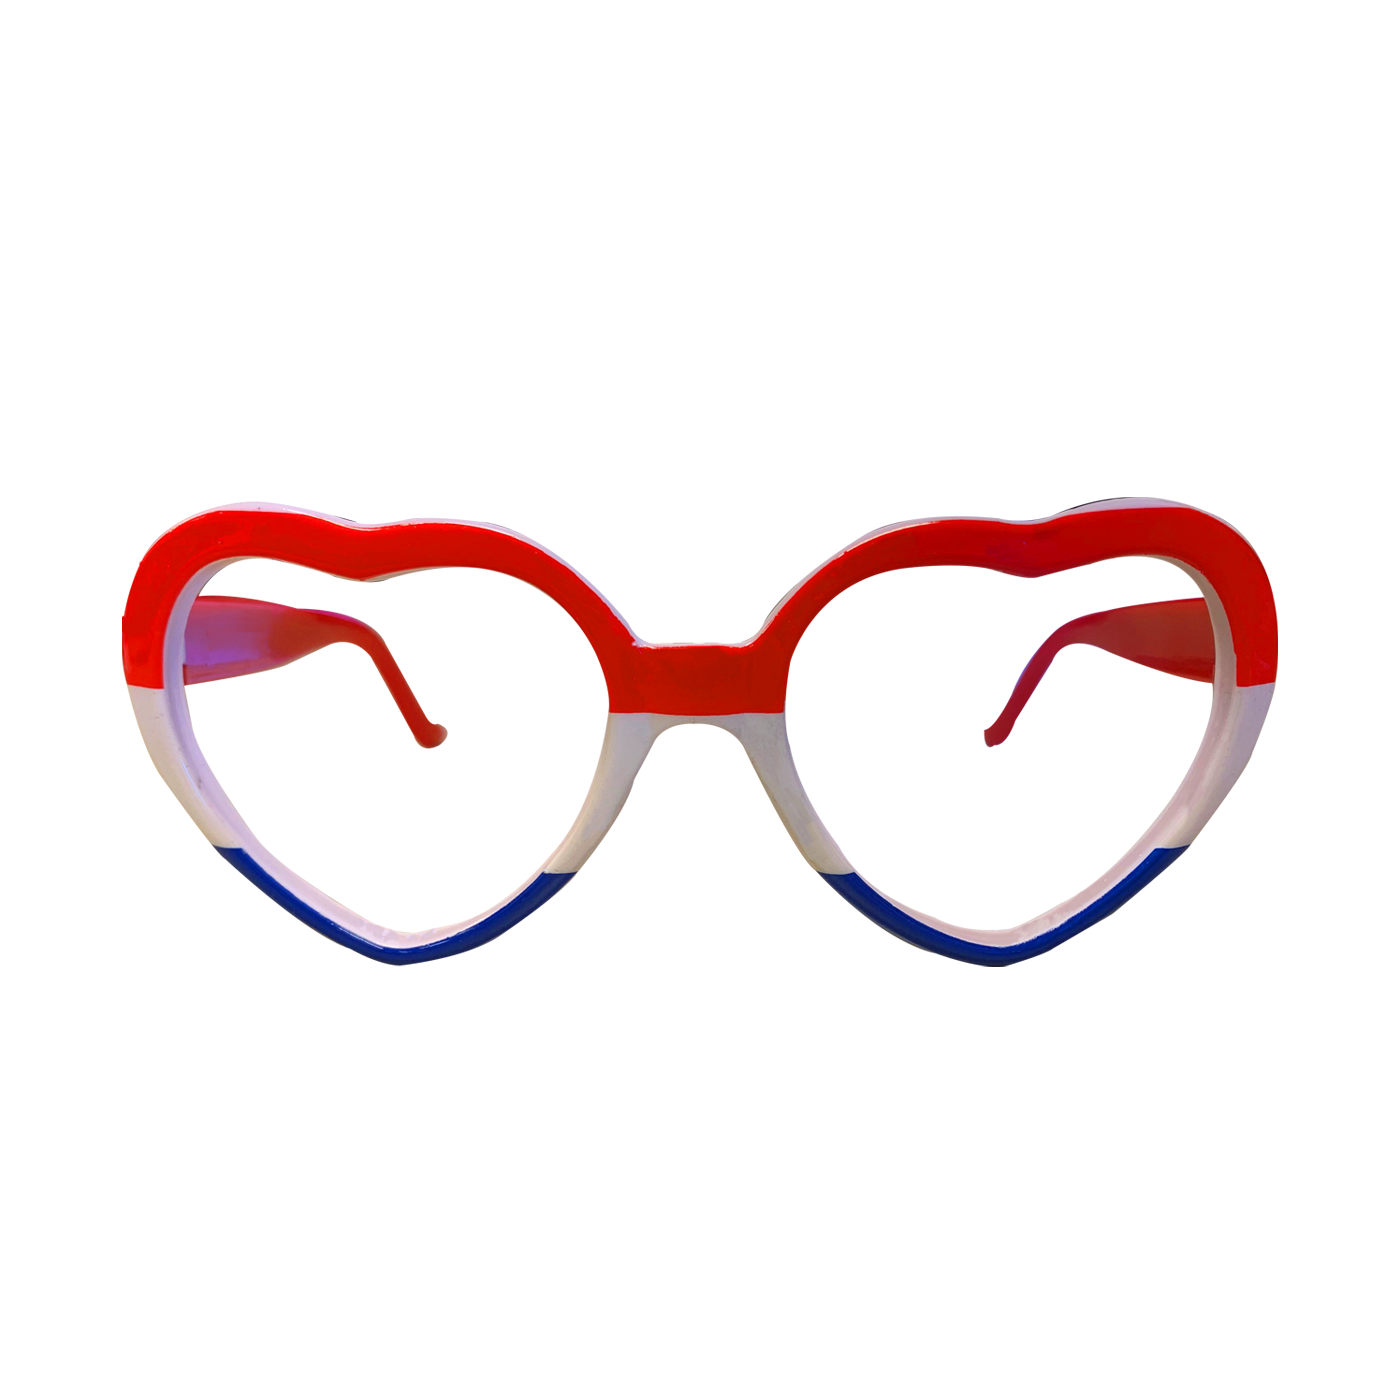 Hartjes bril rood/wit/blauw kopen